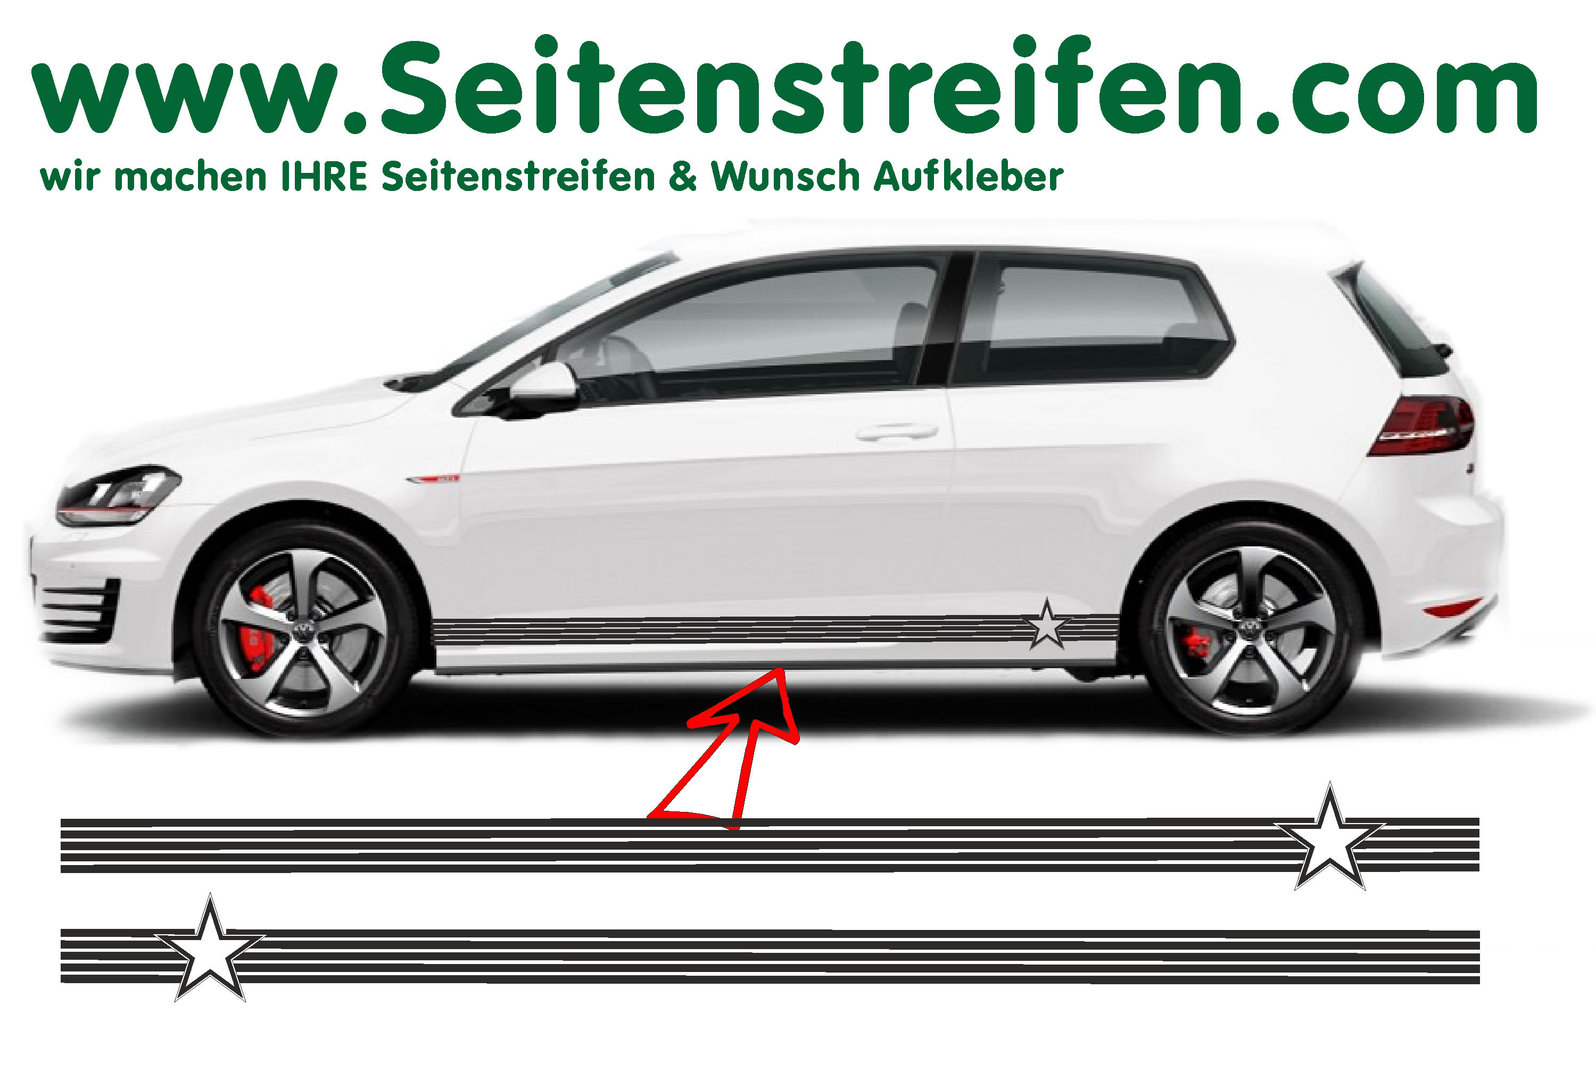 VW Golf Star Stern Seitenstreifen Aufkleber Set - für 3+4 Türer Nr.: 8496